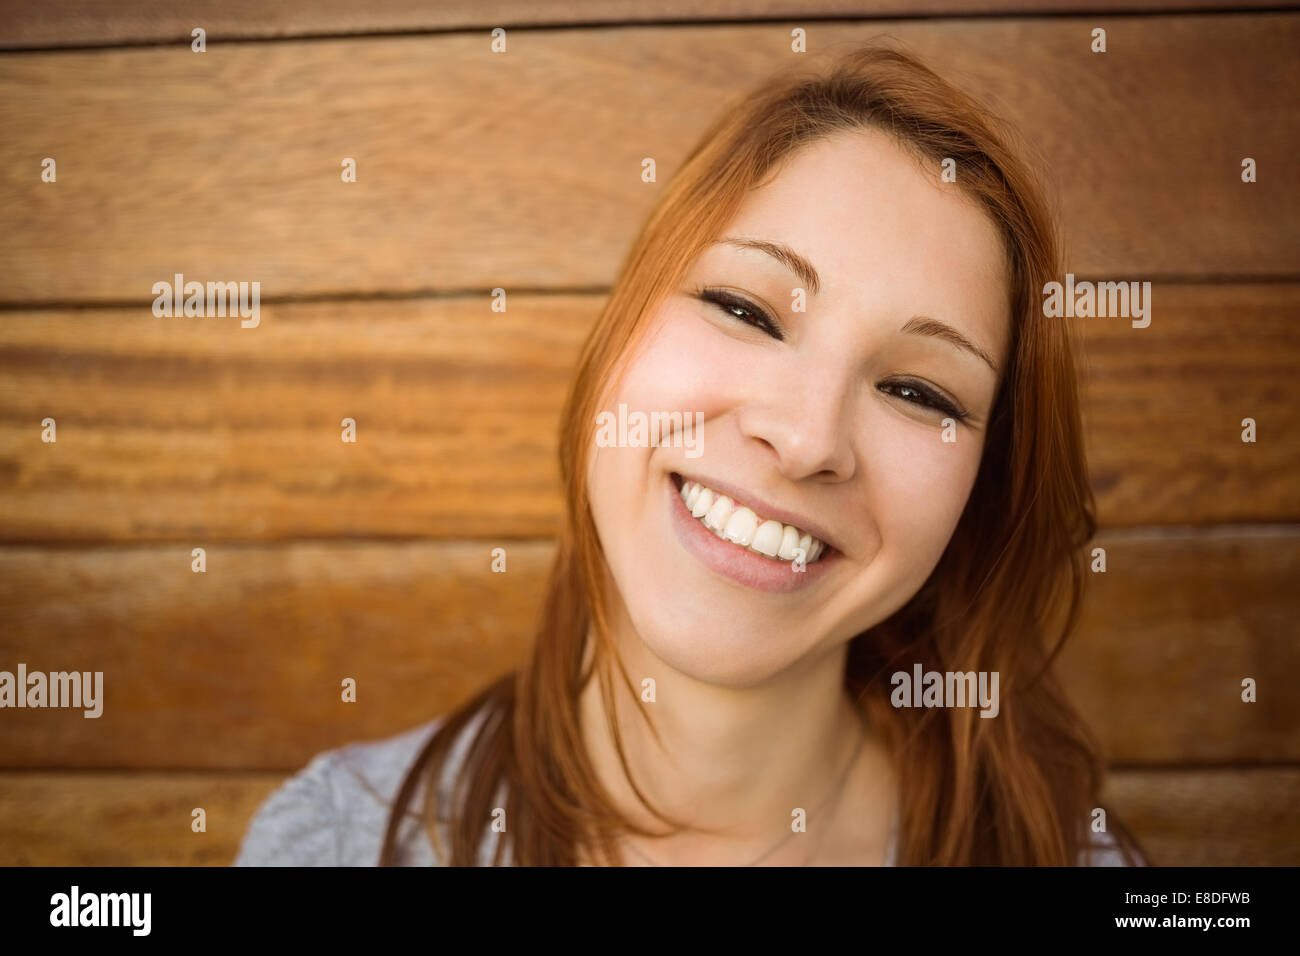 Portrait d'une rousse smiling at the camera Banque D'Images